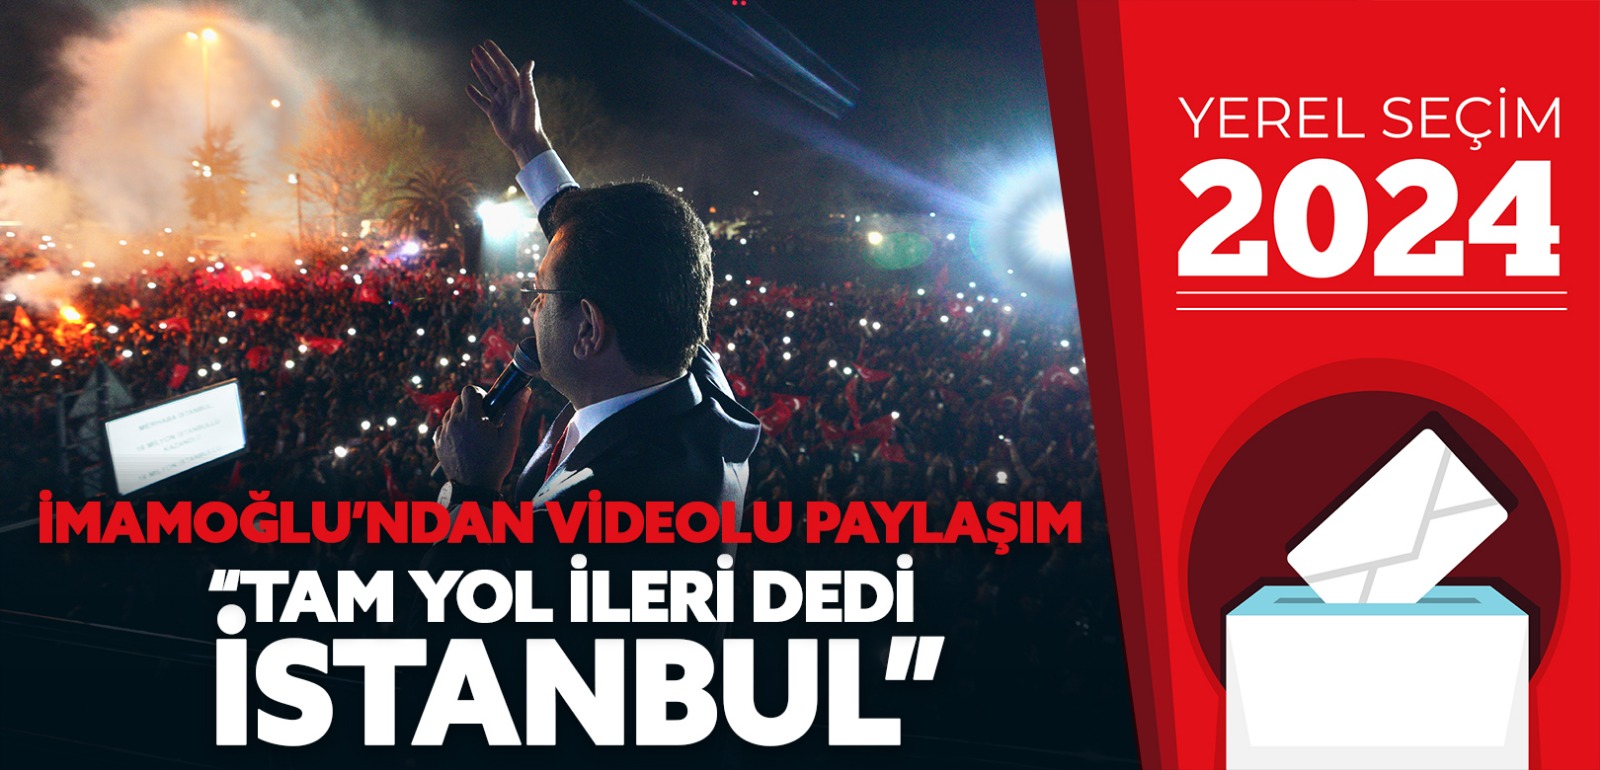 İmamoğlu’ndan videolu paylaşım “Tam yol ileri dedi İstanbul”